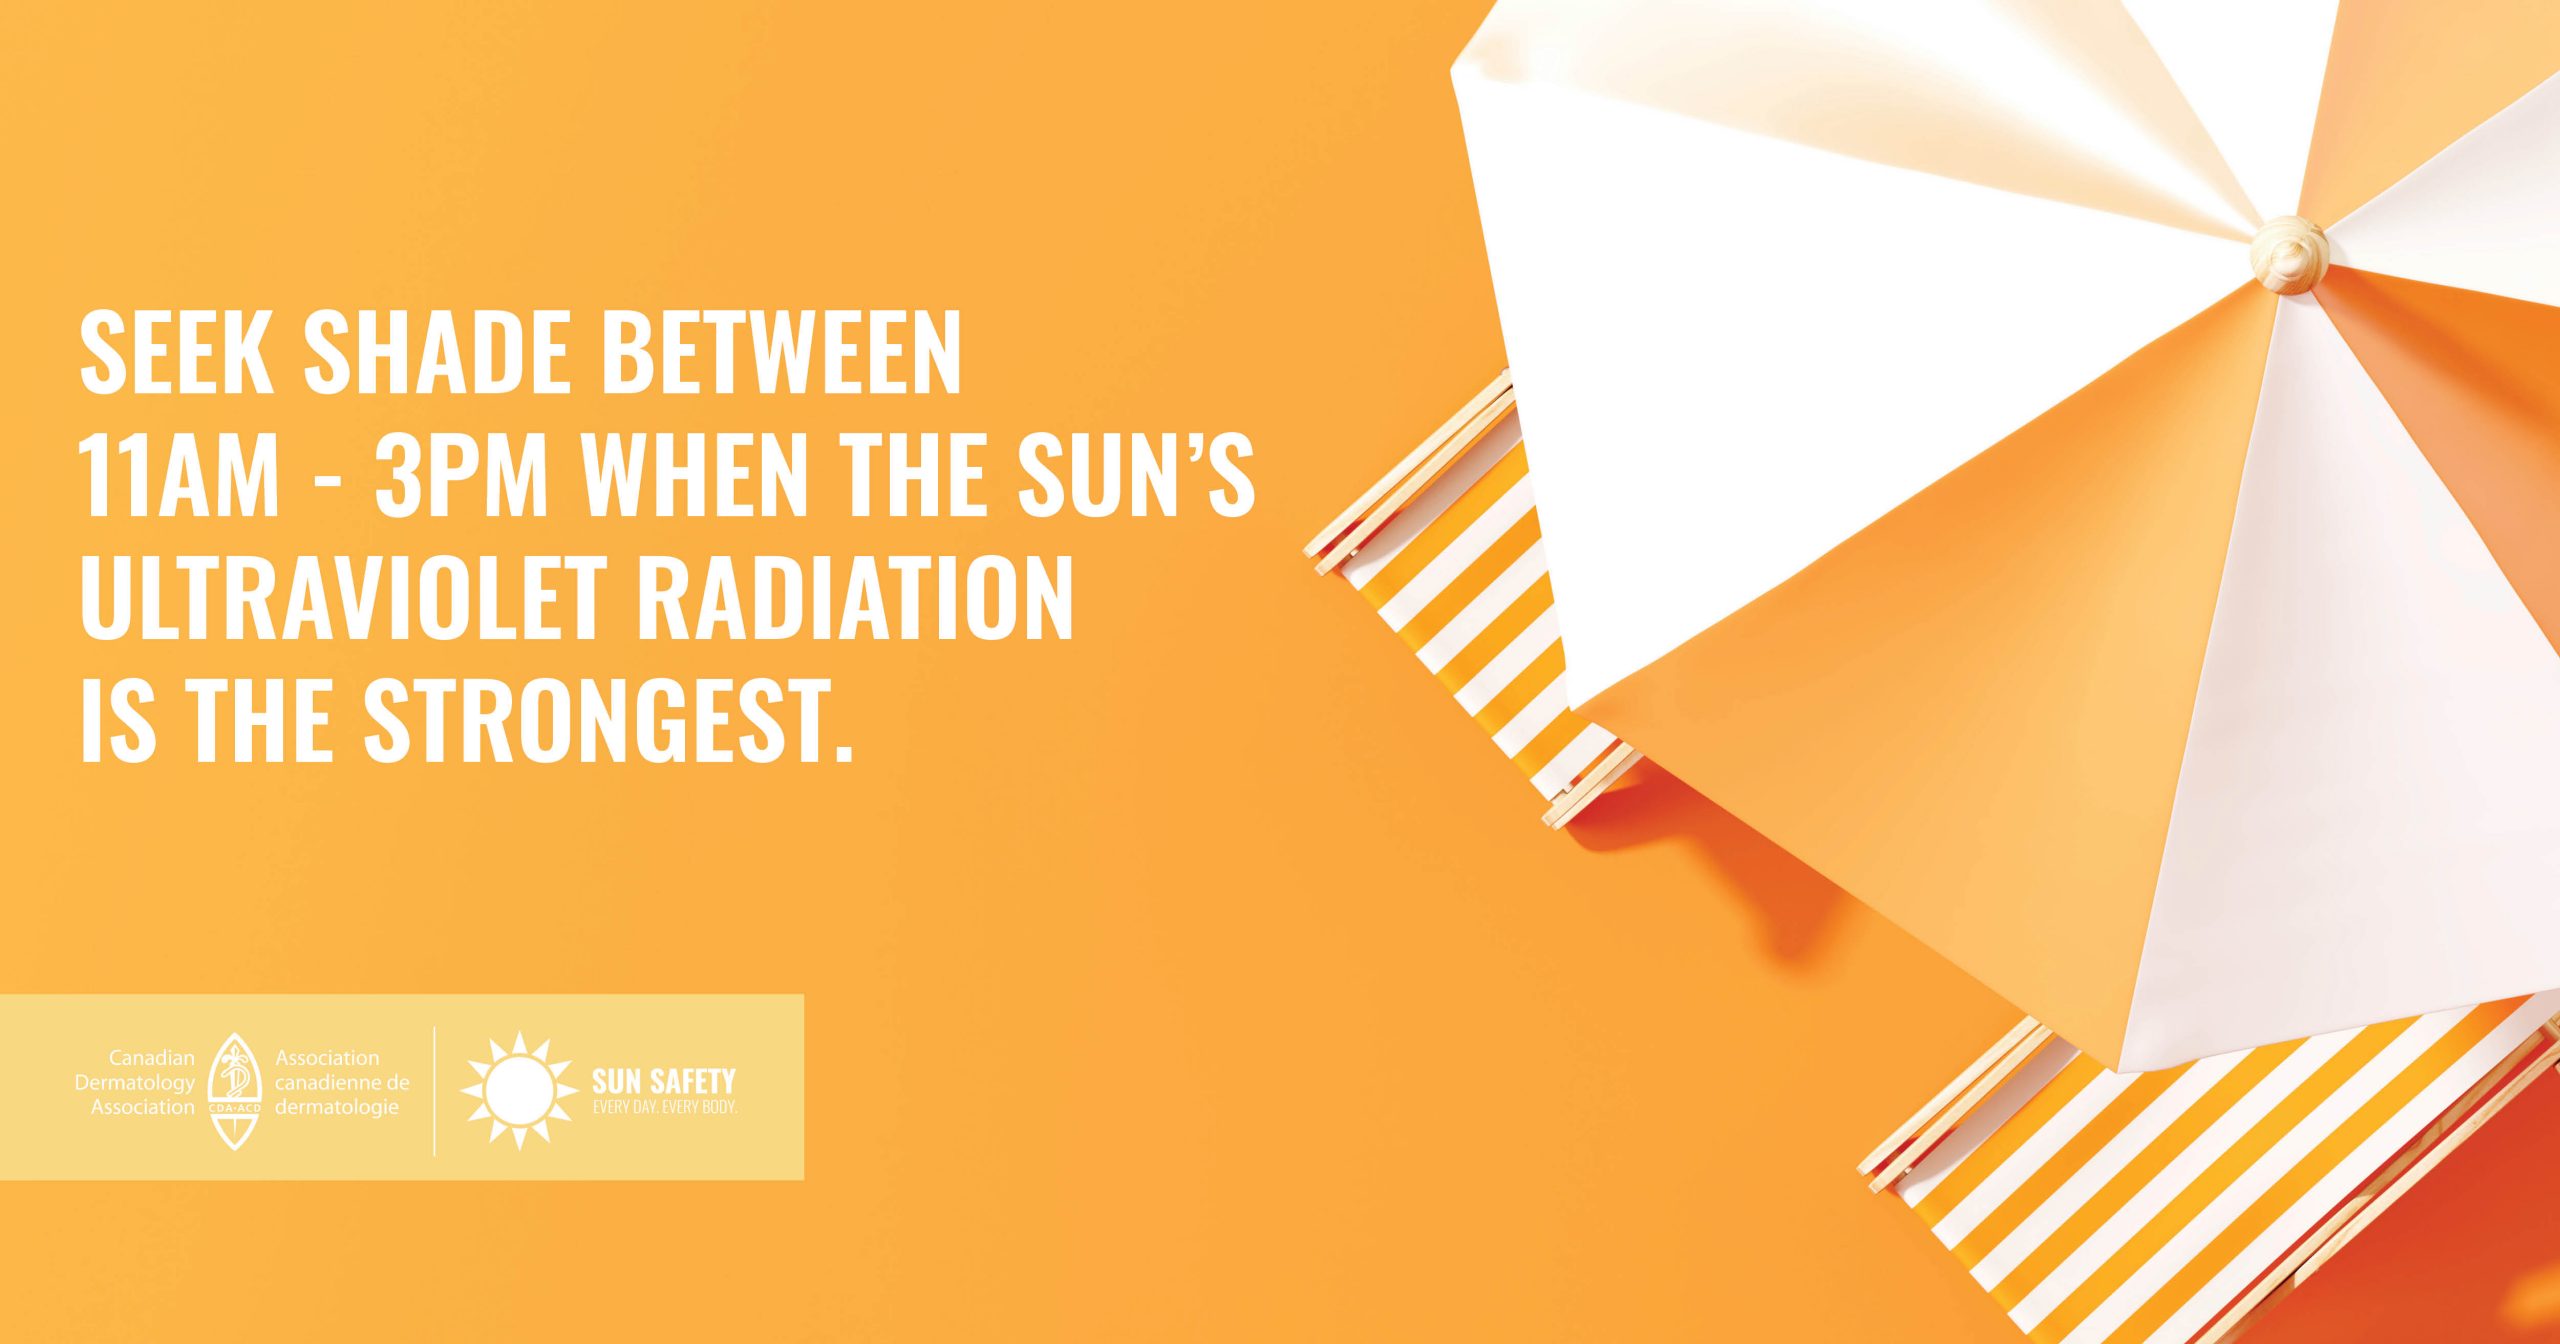 在上午11点到下午3点之间寻找阴凉处，这段时间太阳紫外线辐射最强。